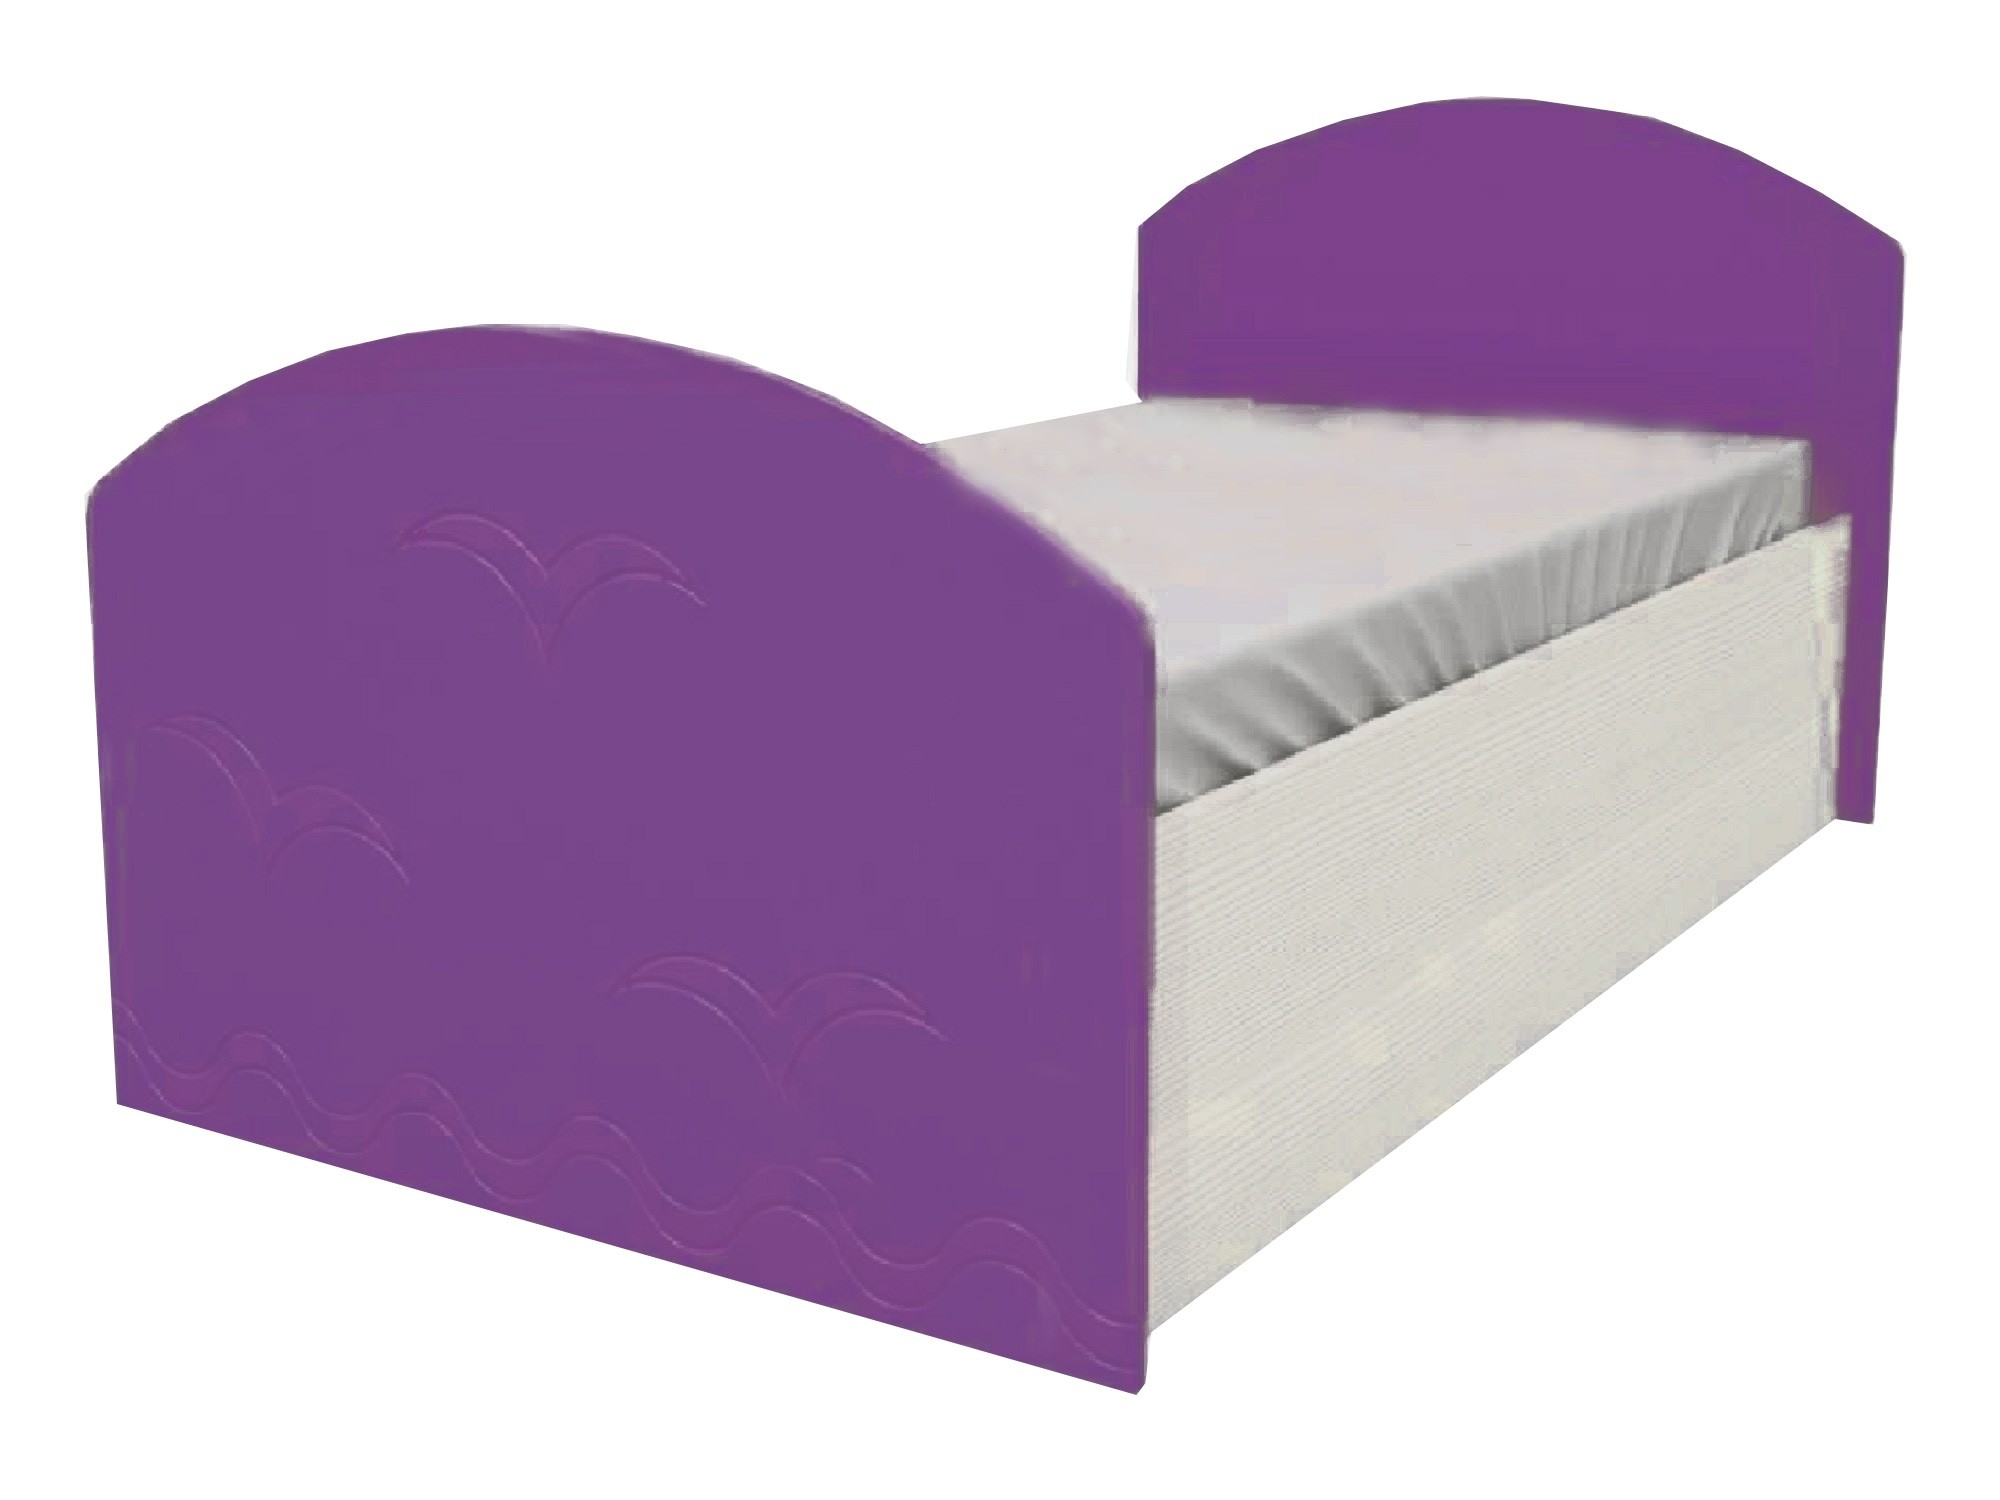 Юниор-2 Детская кровать 80, металлик (Фиолетовый металлик, Дуб белёный) Дуб белёный, МДФ, ЛДСП юниор 2 детская кровать 80 металлик фиолетовый металлик дуб белёный дуб белёный мдф лдсп